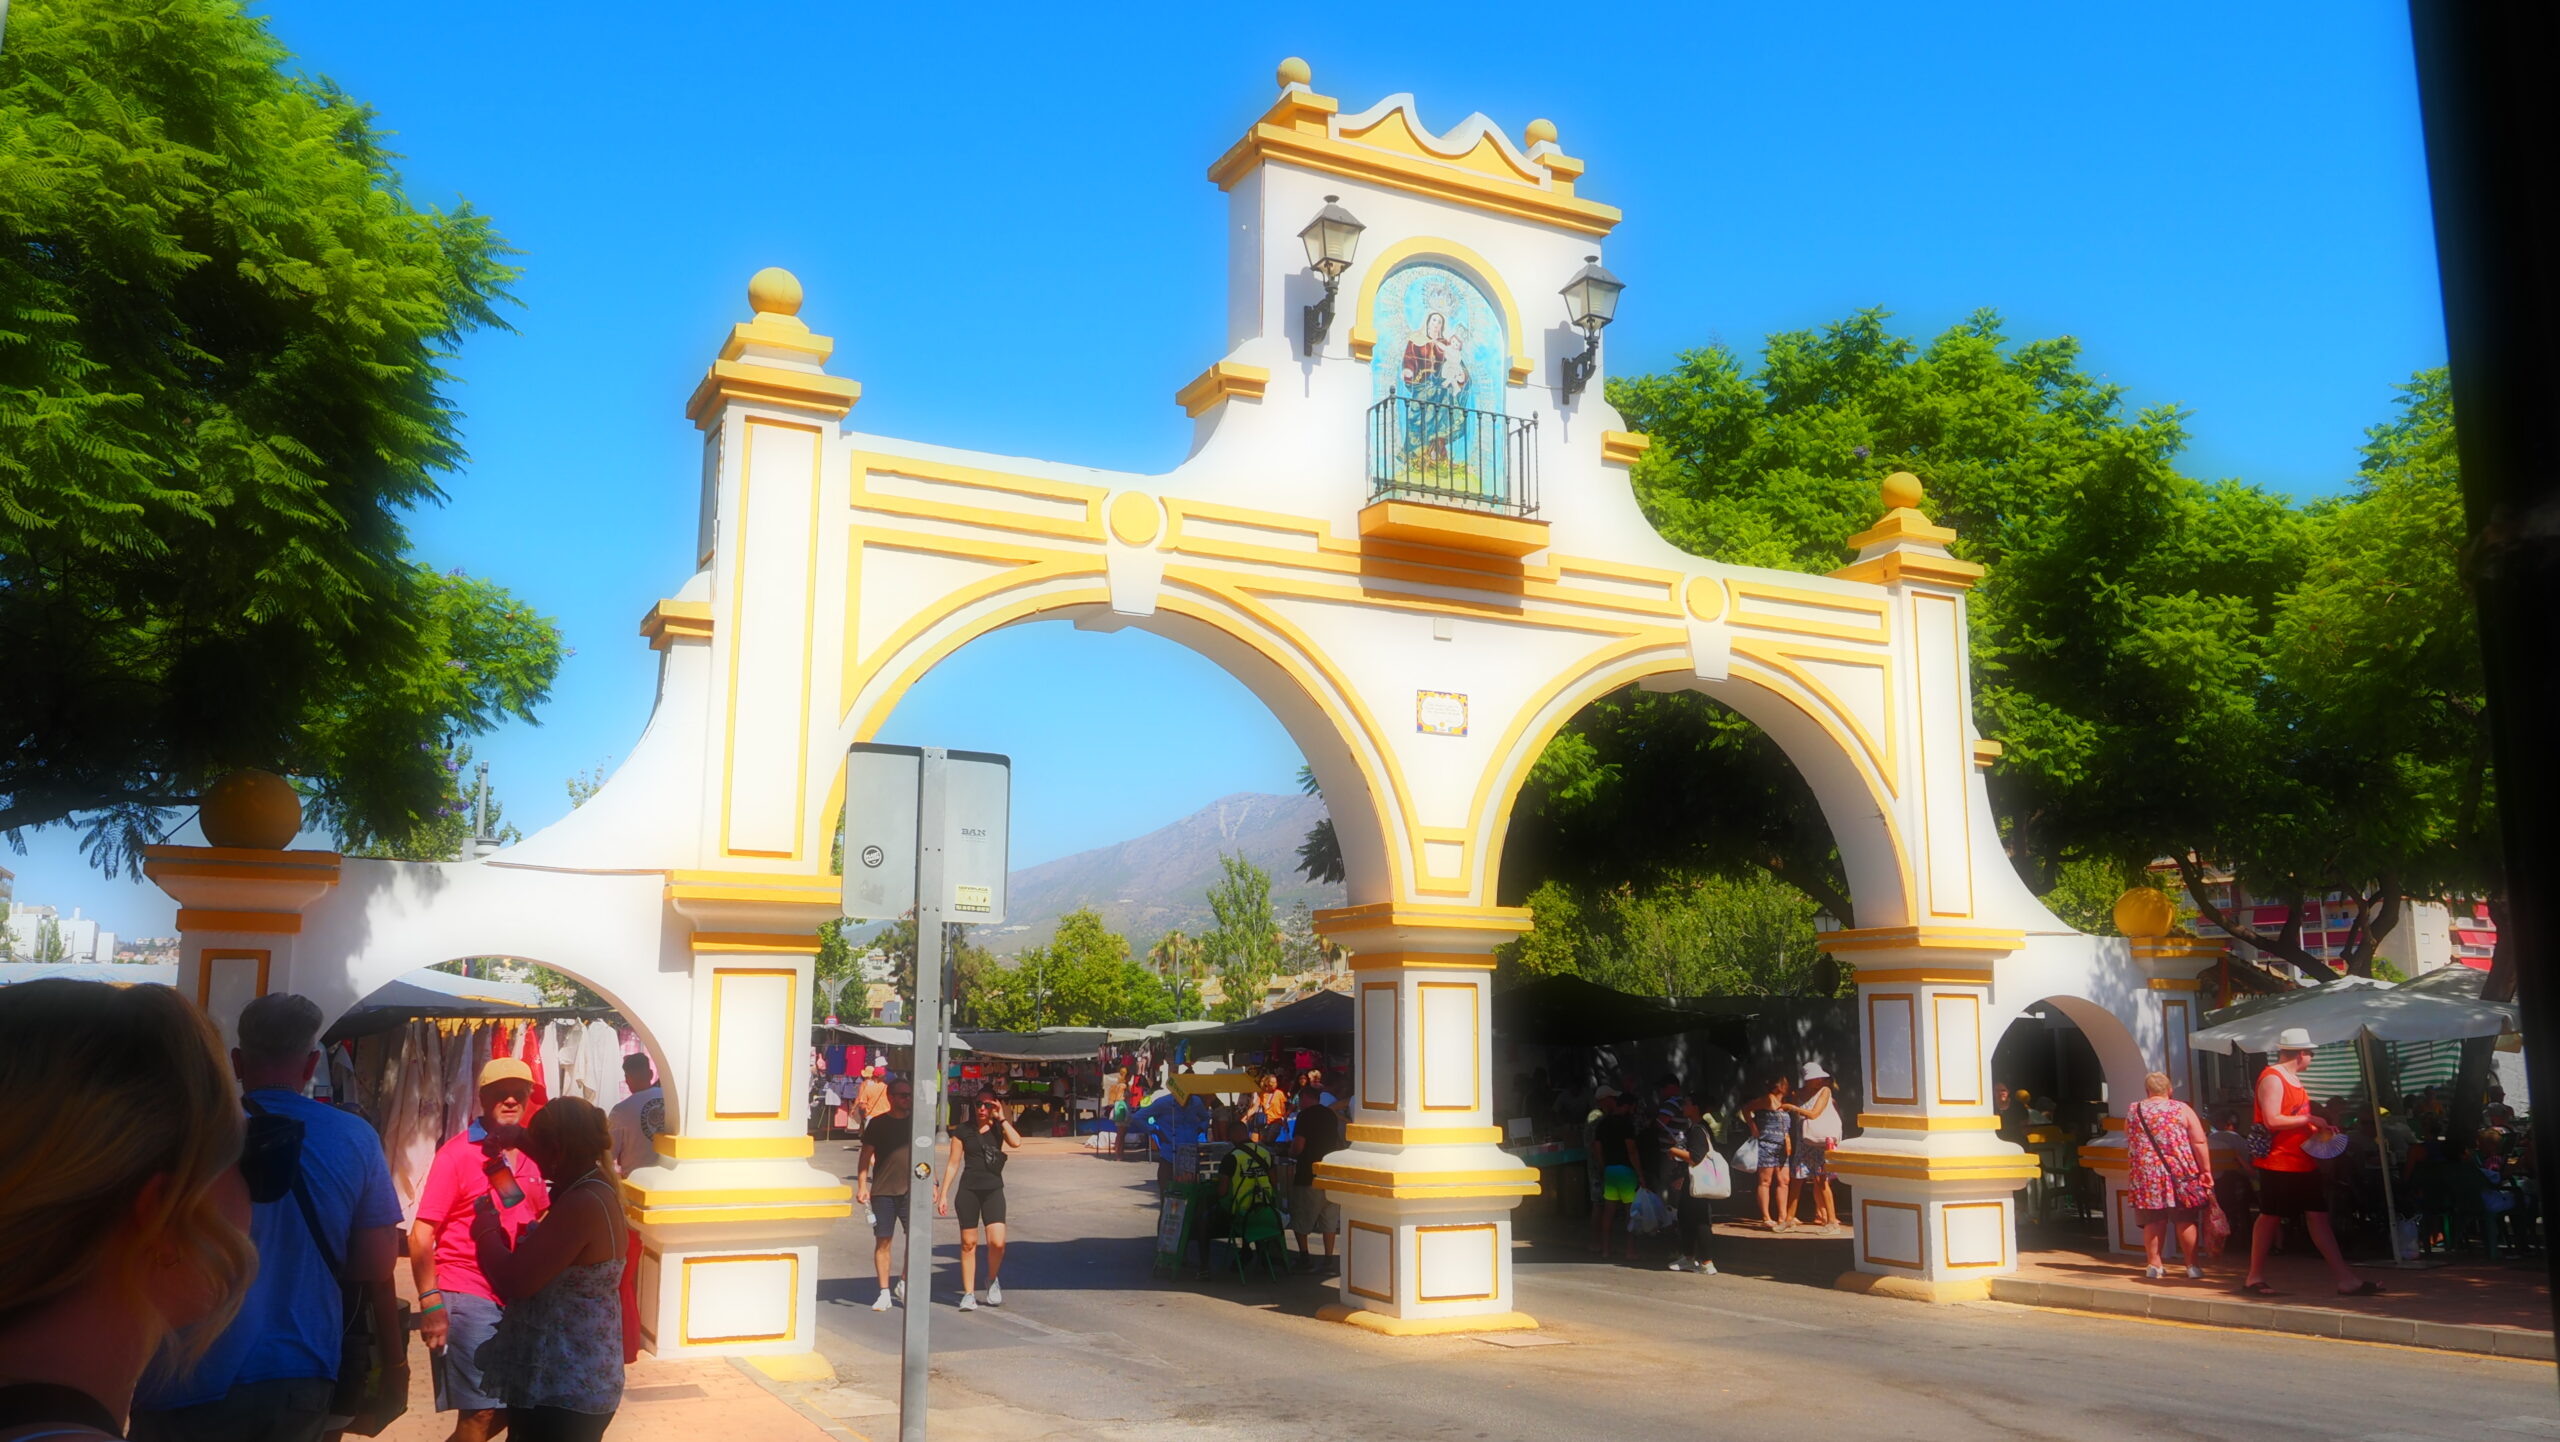 The Plaza de Feria market Fuengirola